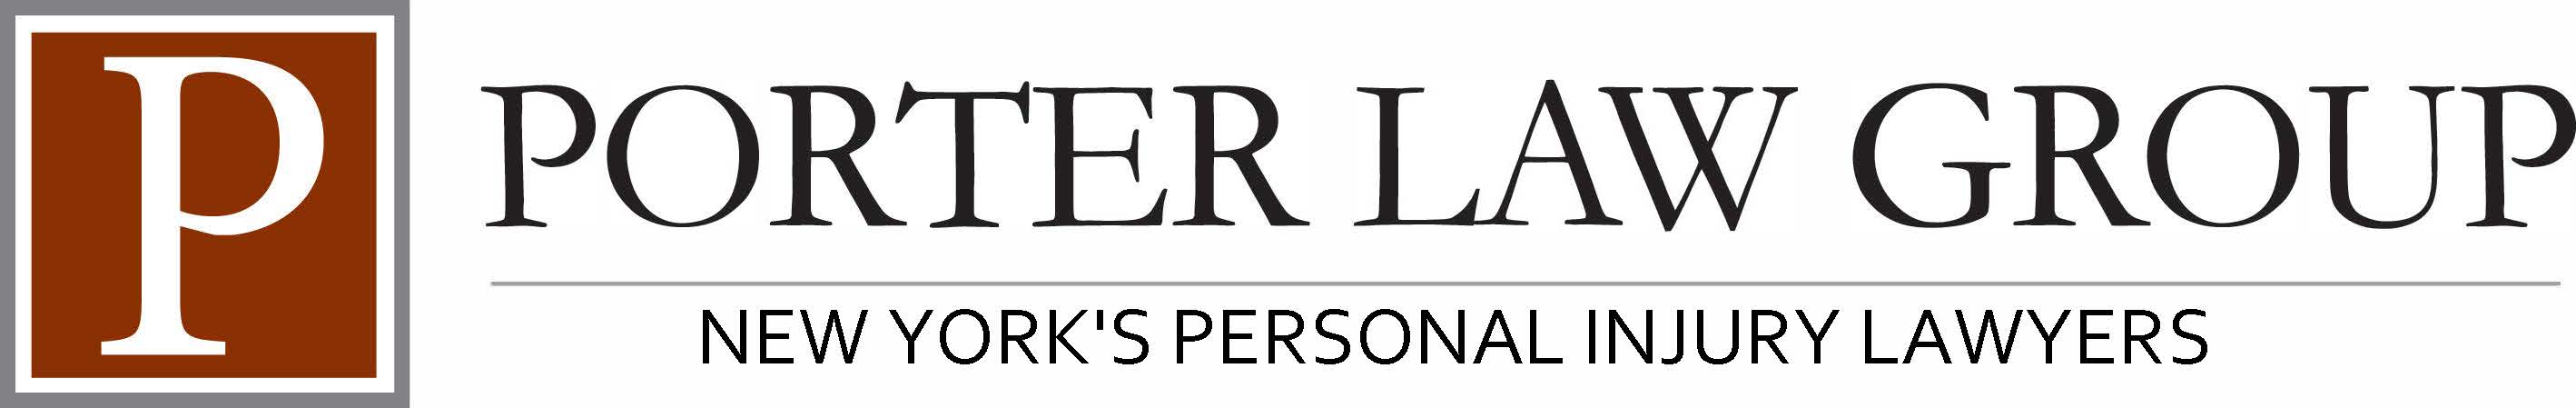 PLG Personal Injury Logo